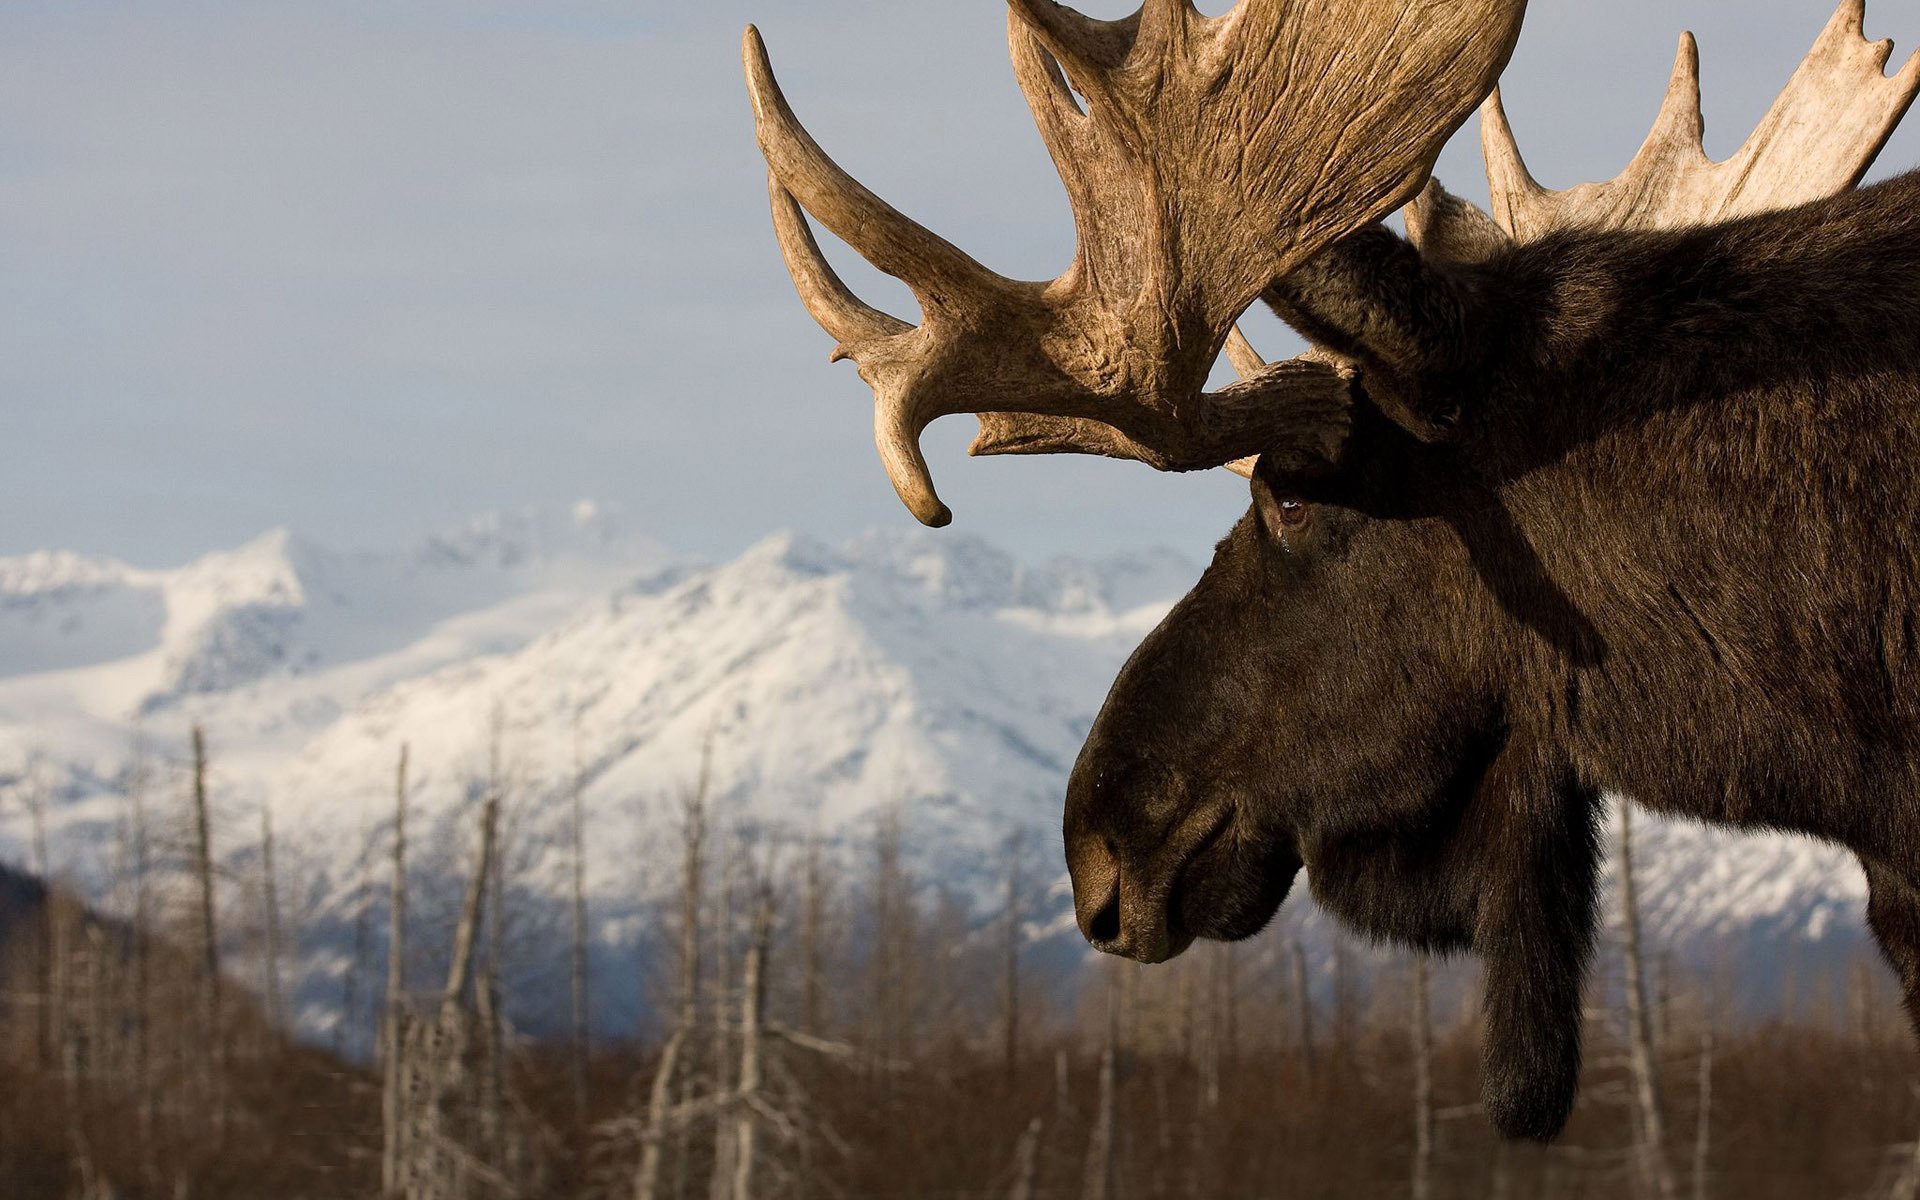 Moose Wallpaper Umad
endangered Male Elk Moose In Prairie - Backgrounds Of Moose - HD Wallpaper 